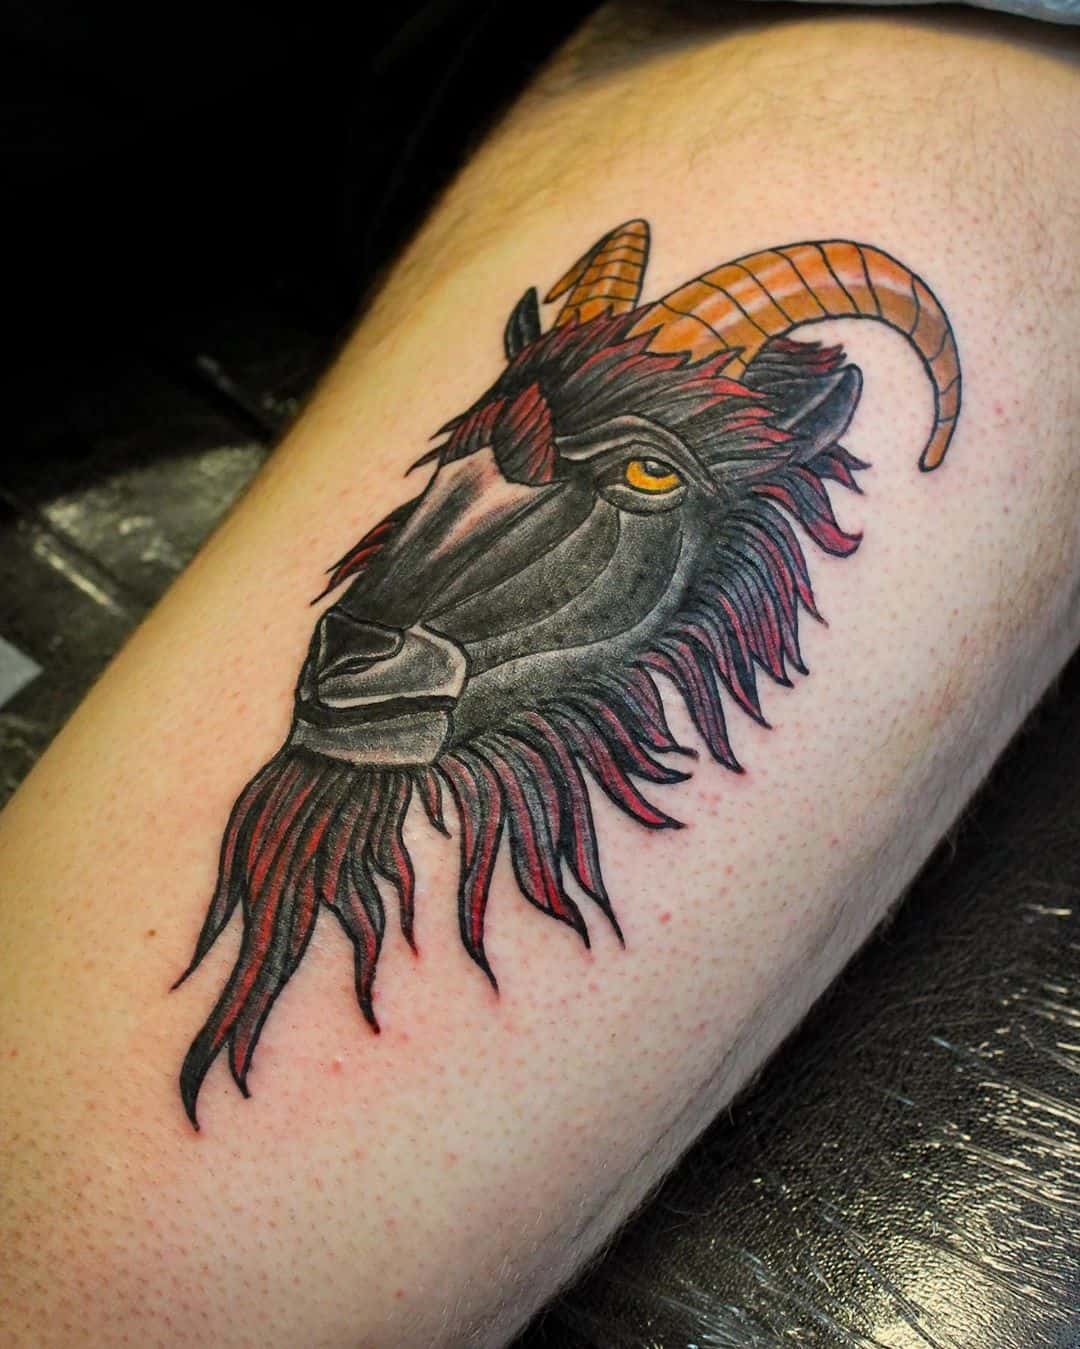 20 Diseños de tatuajes de cabras gloriosas y el significado del símbolo